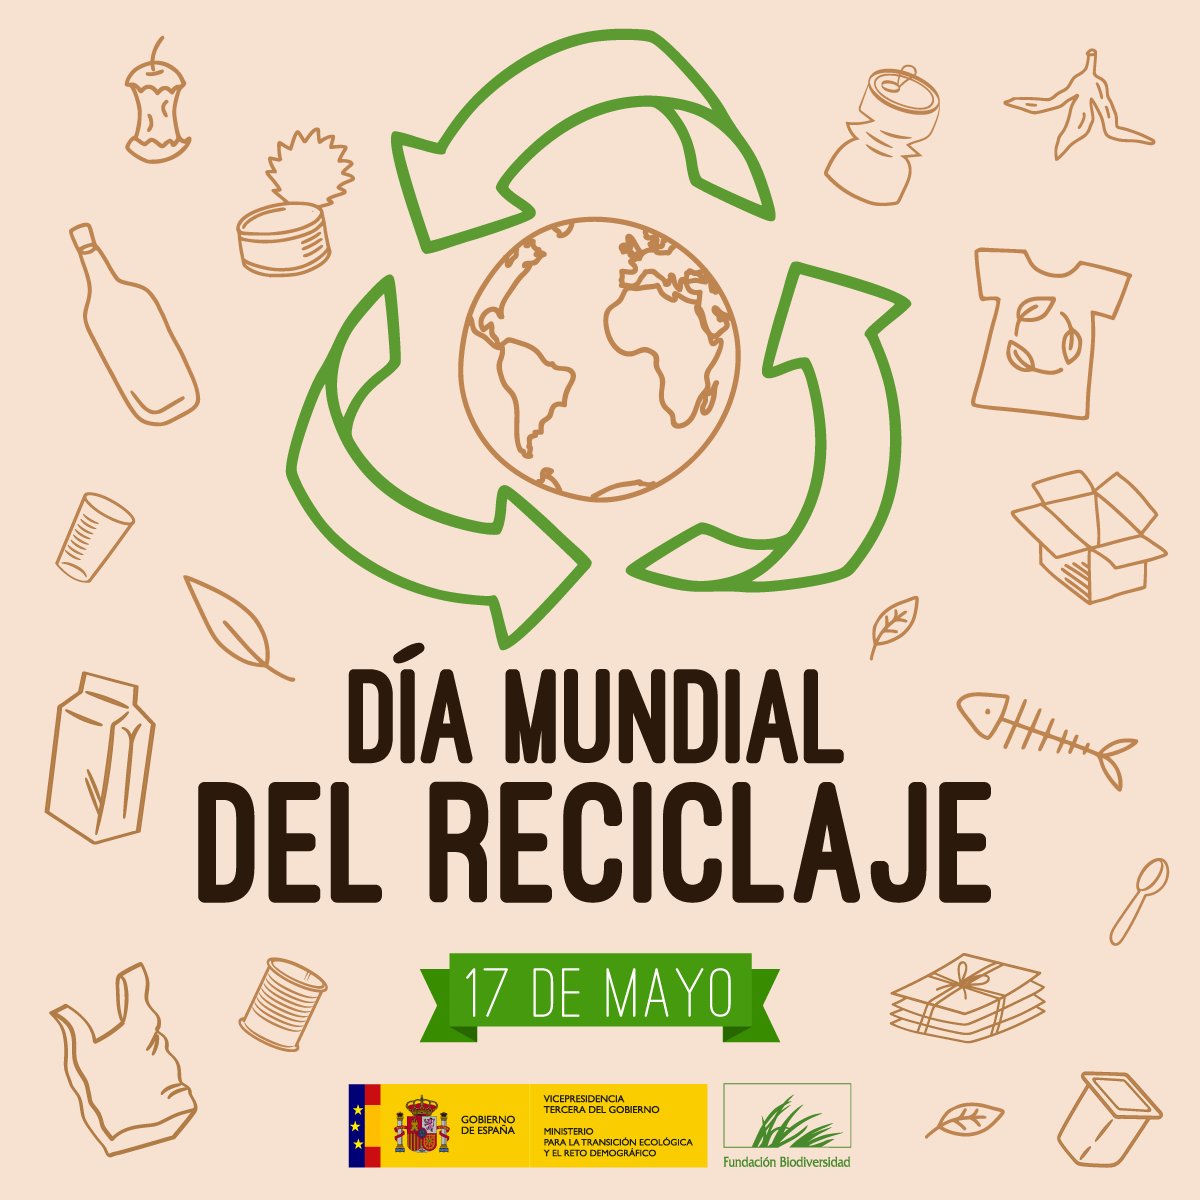 Apostar por un modelo económico más sostenible es apostar por la #EconomíaCircular, el #reciclaje ♻️ y la generación de menos residuos.  

Reducir el impacto ambiental es cosa de todos ¡Reduce, reutiliza y recicla! ✋🌍

#DíaMundialdelReciclaje